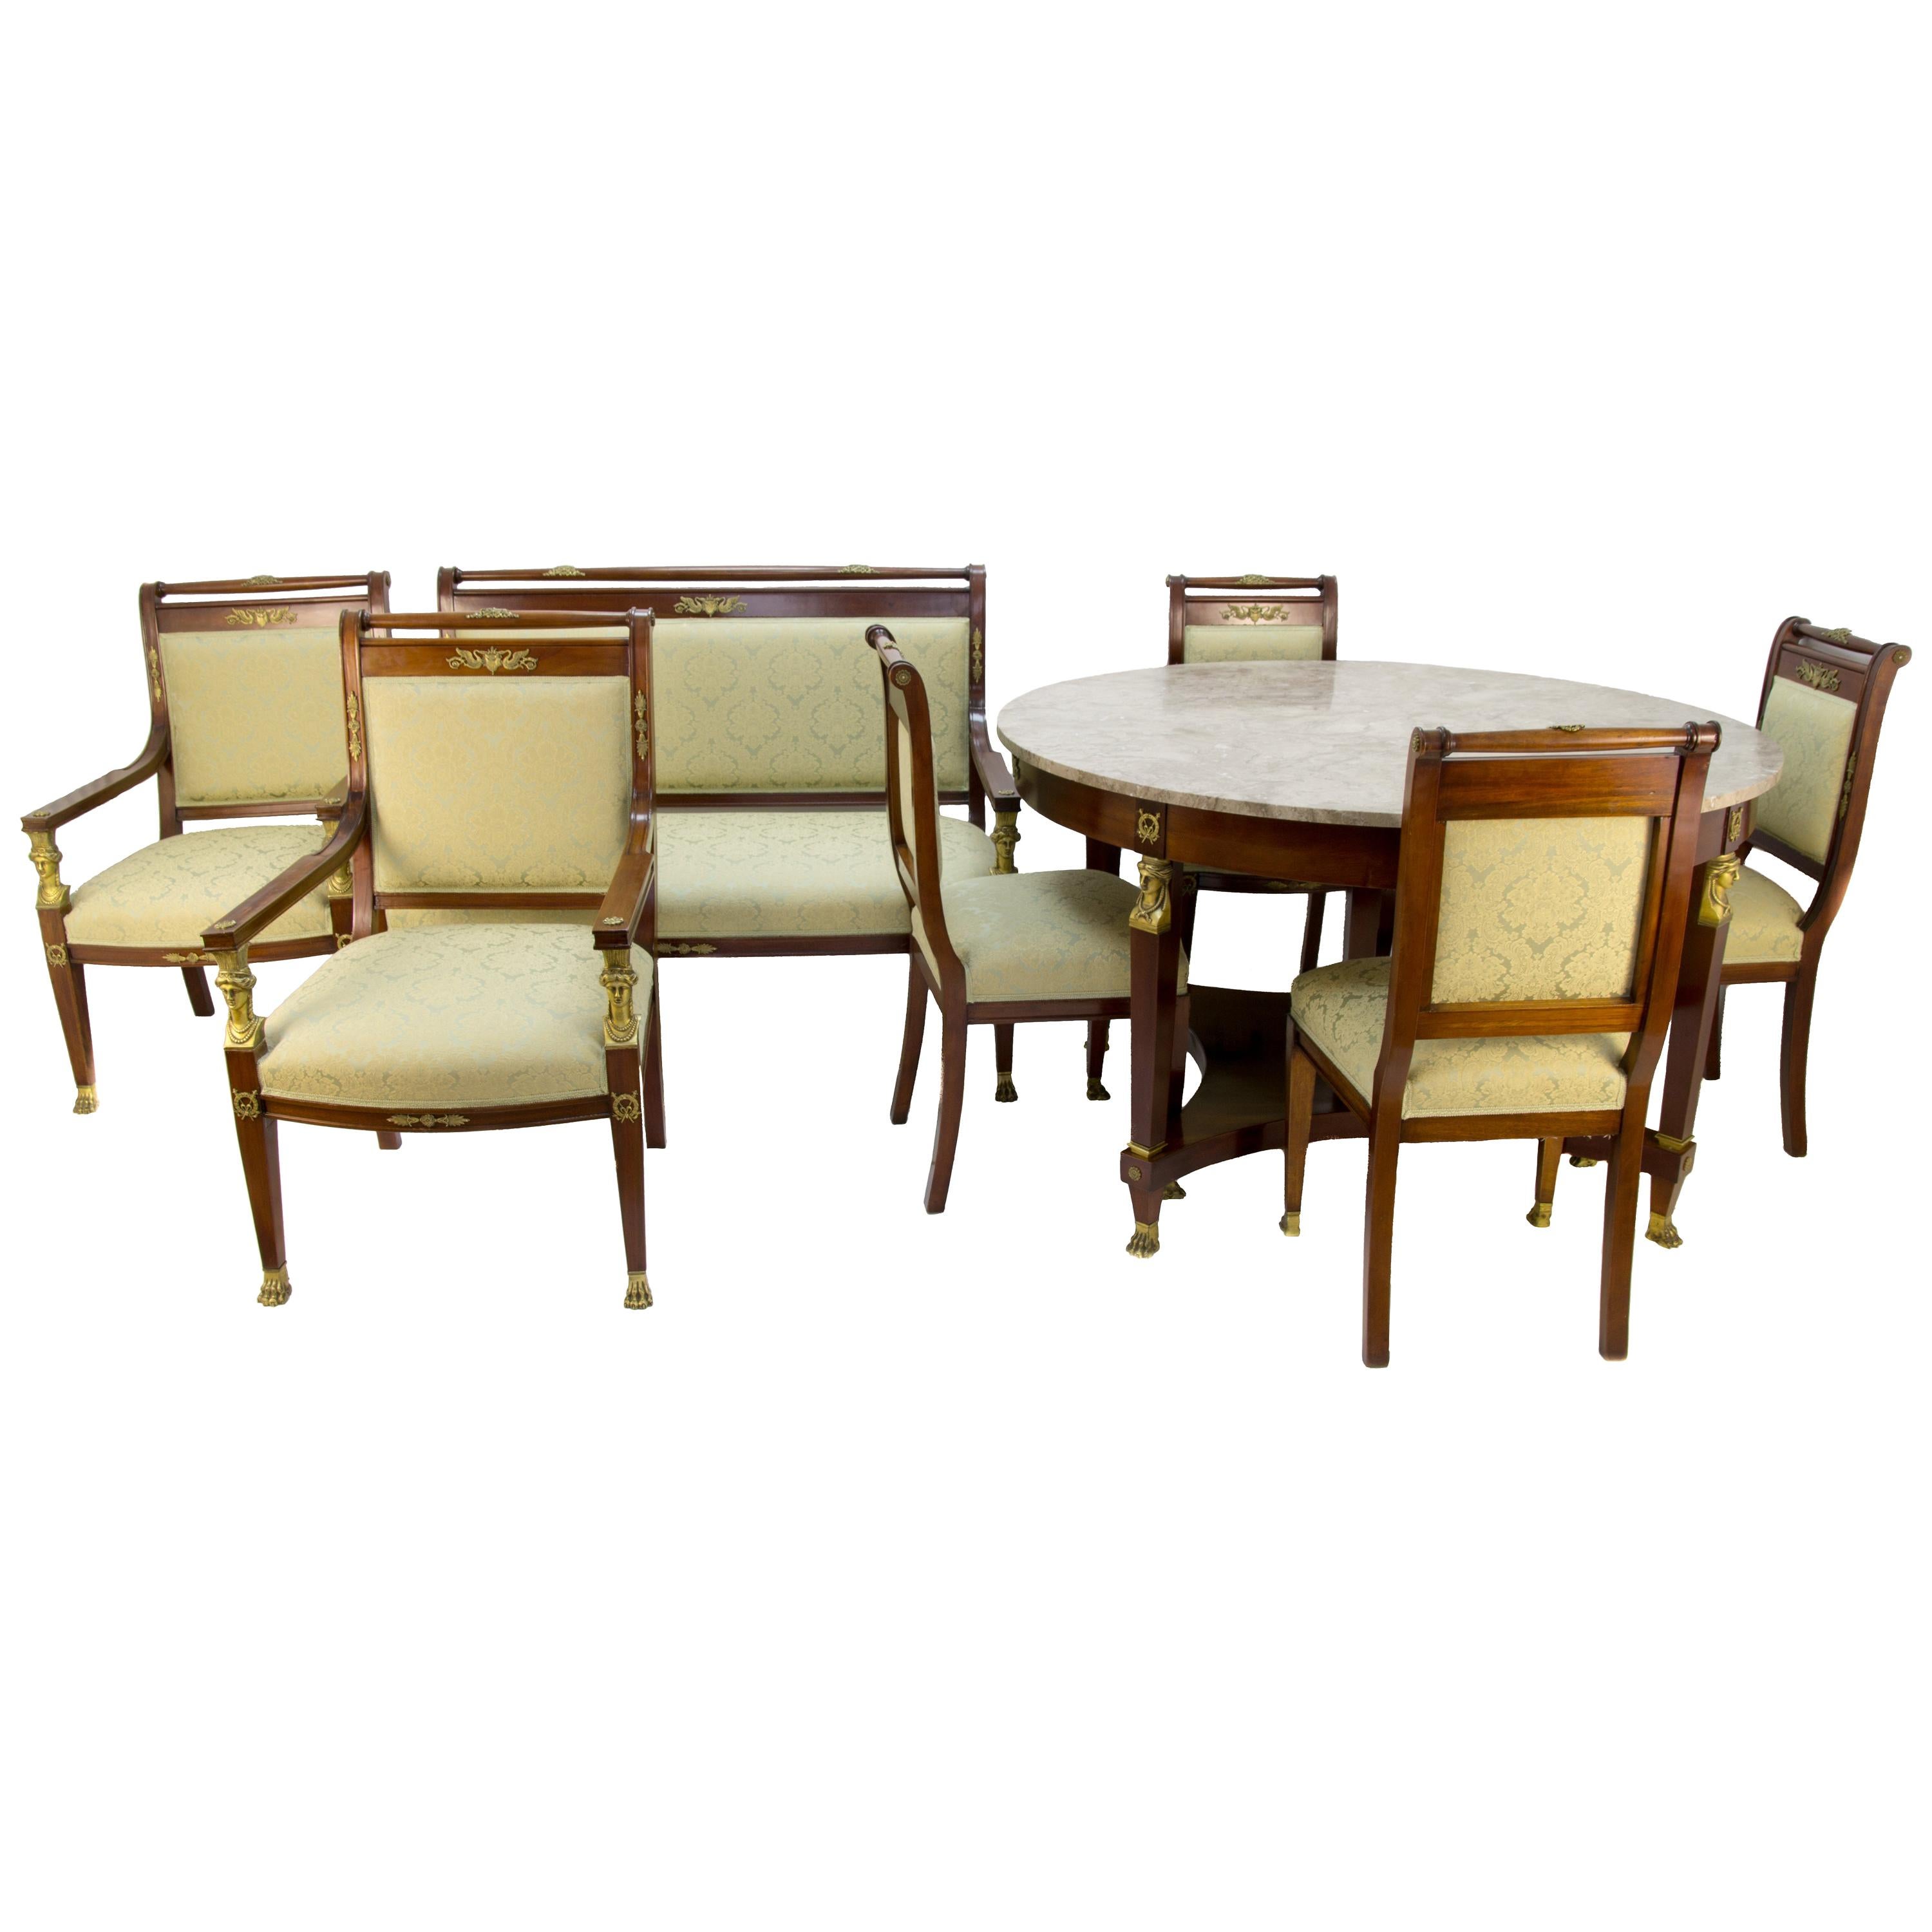 Ensemble table et chaises de salon en noyer, bronze et marbre de style French Empire